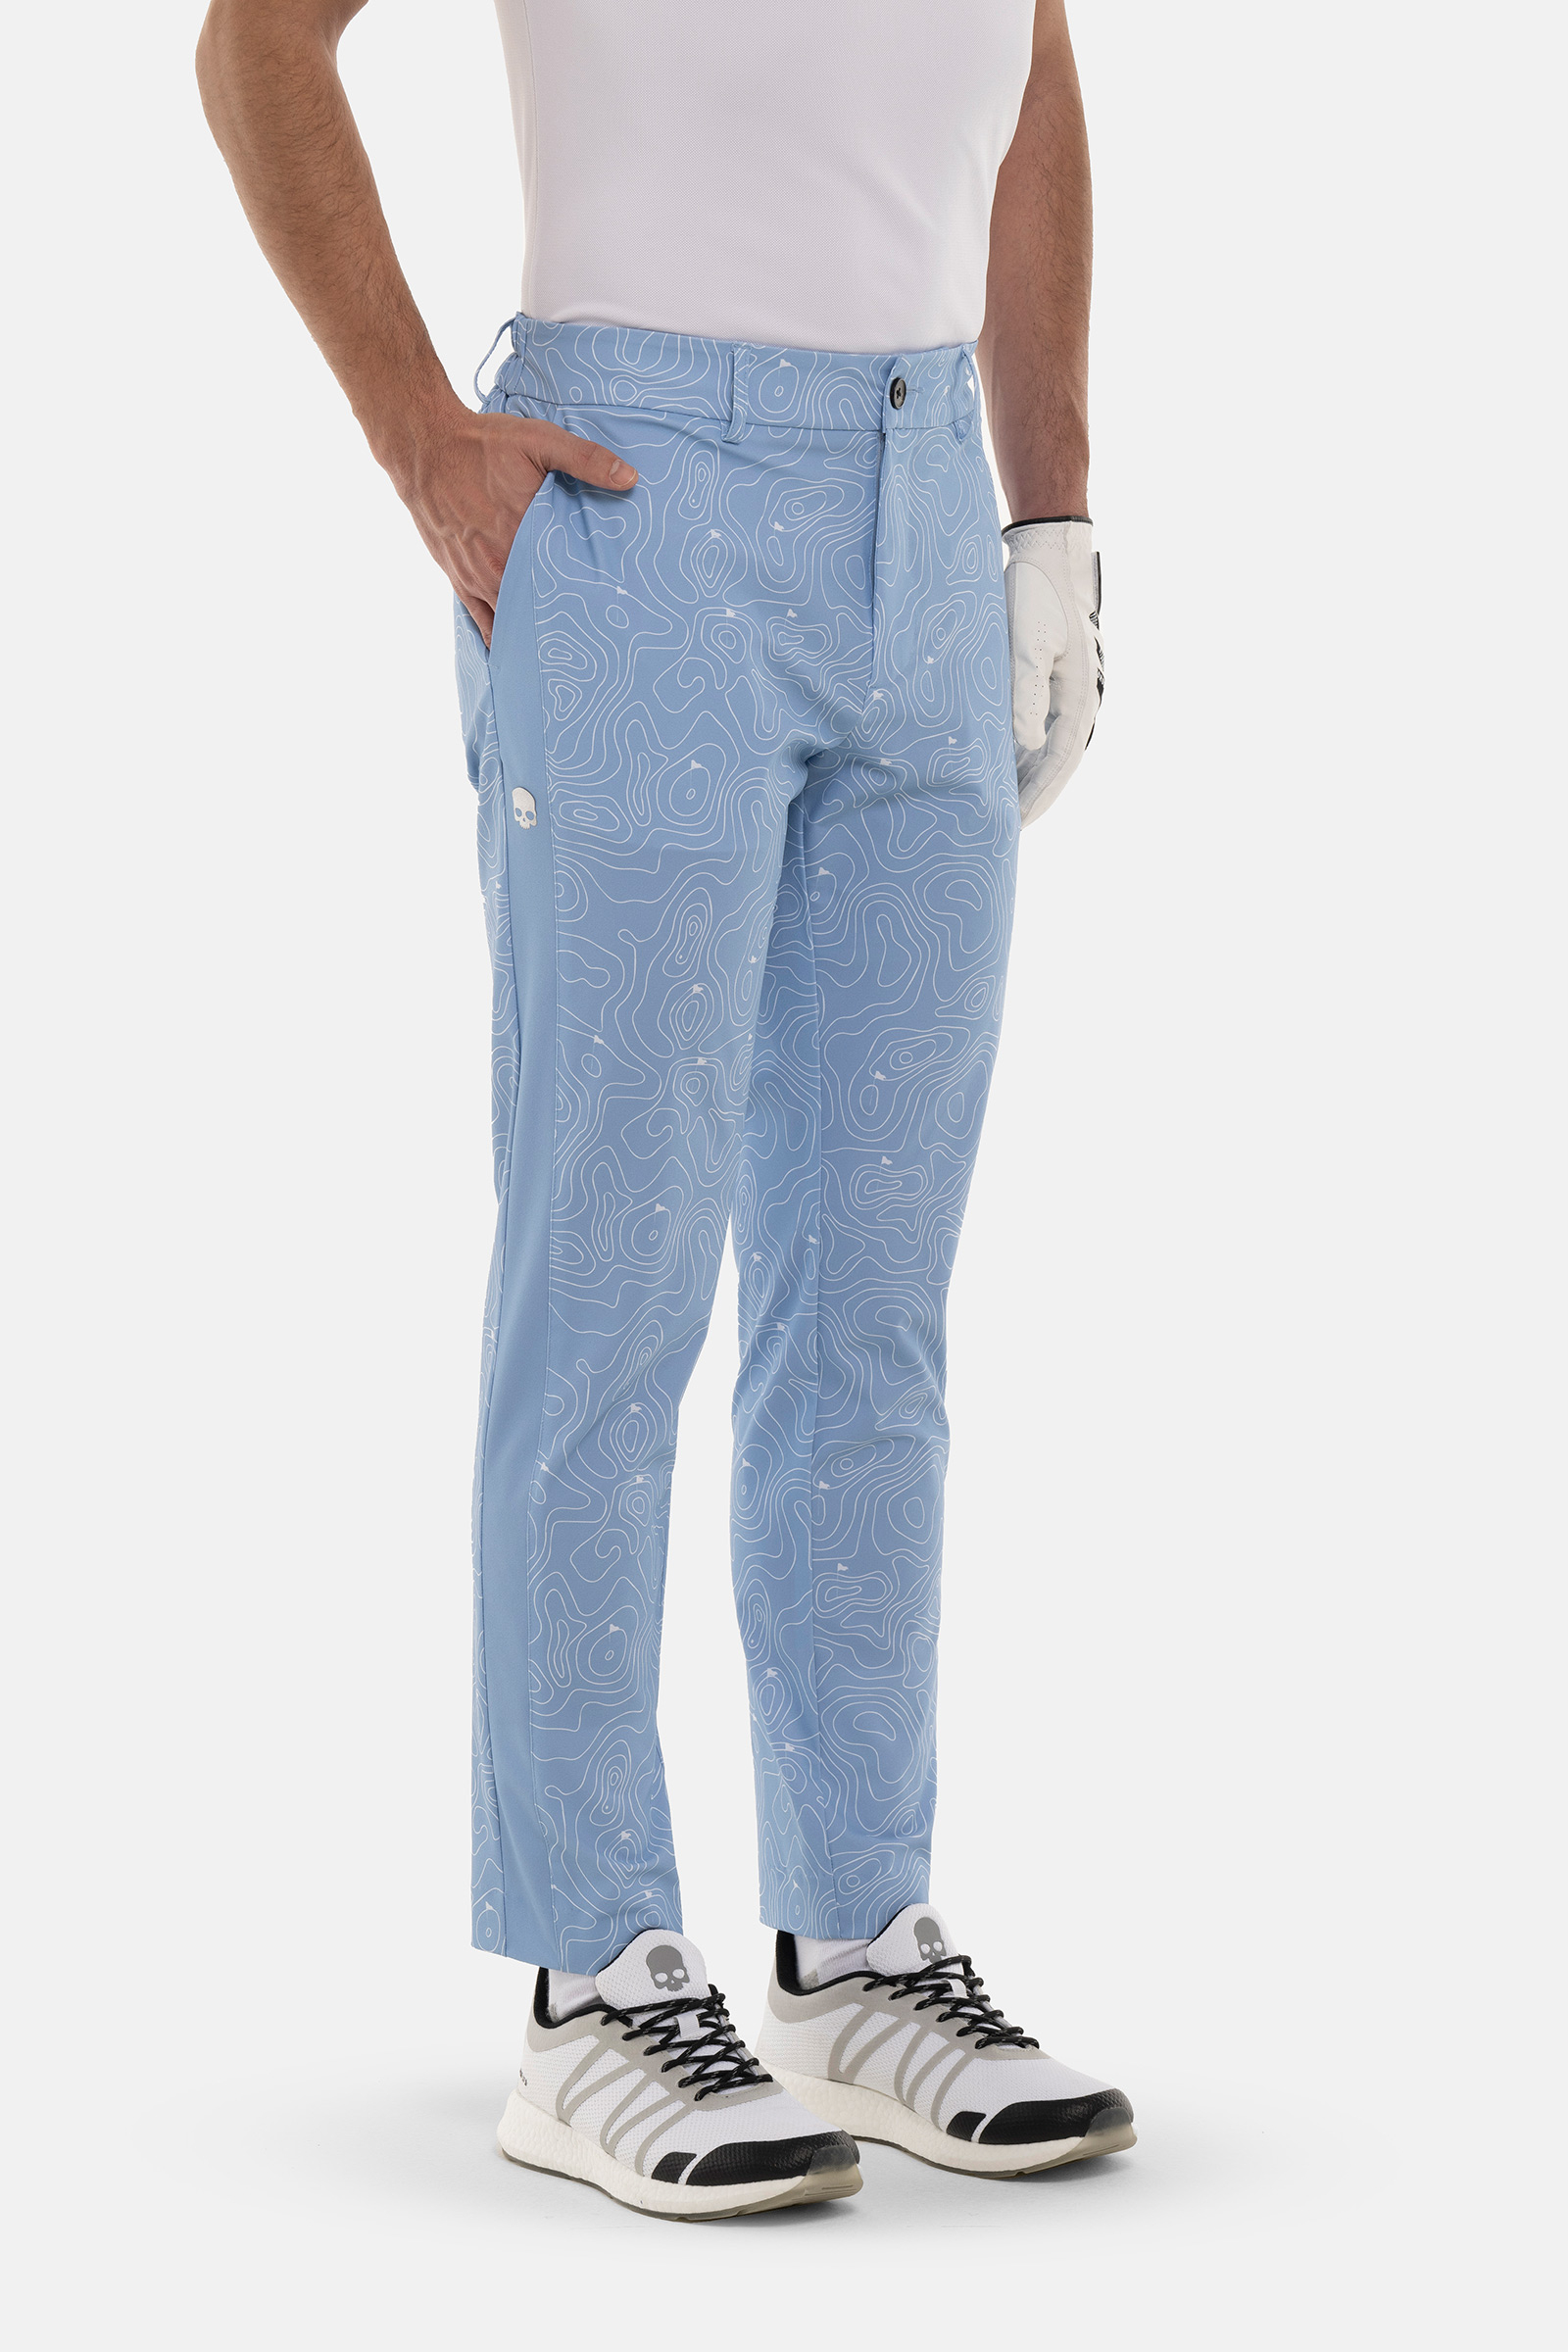 GOLF FIELDS TECH PANTS - LIGHT BLUE - Hydrogen - Luxury Sportwear